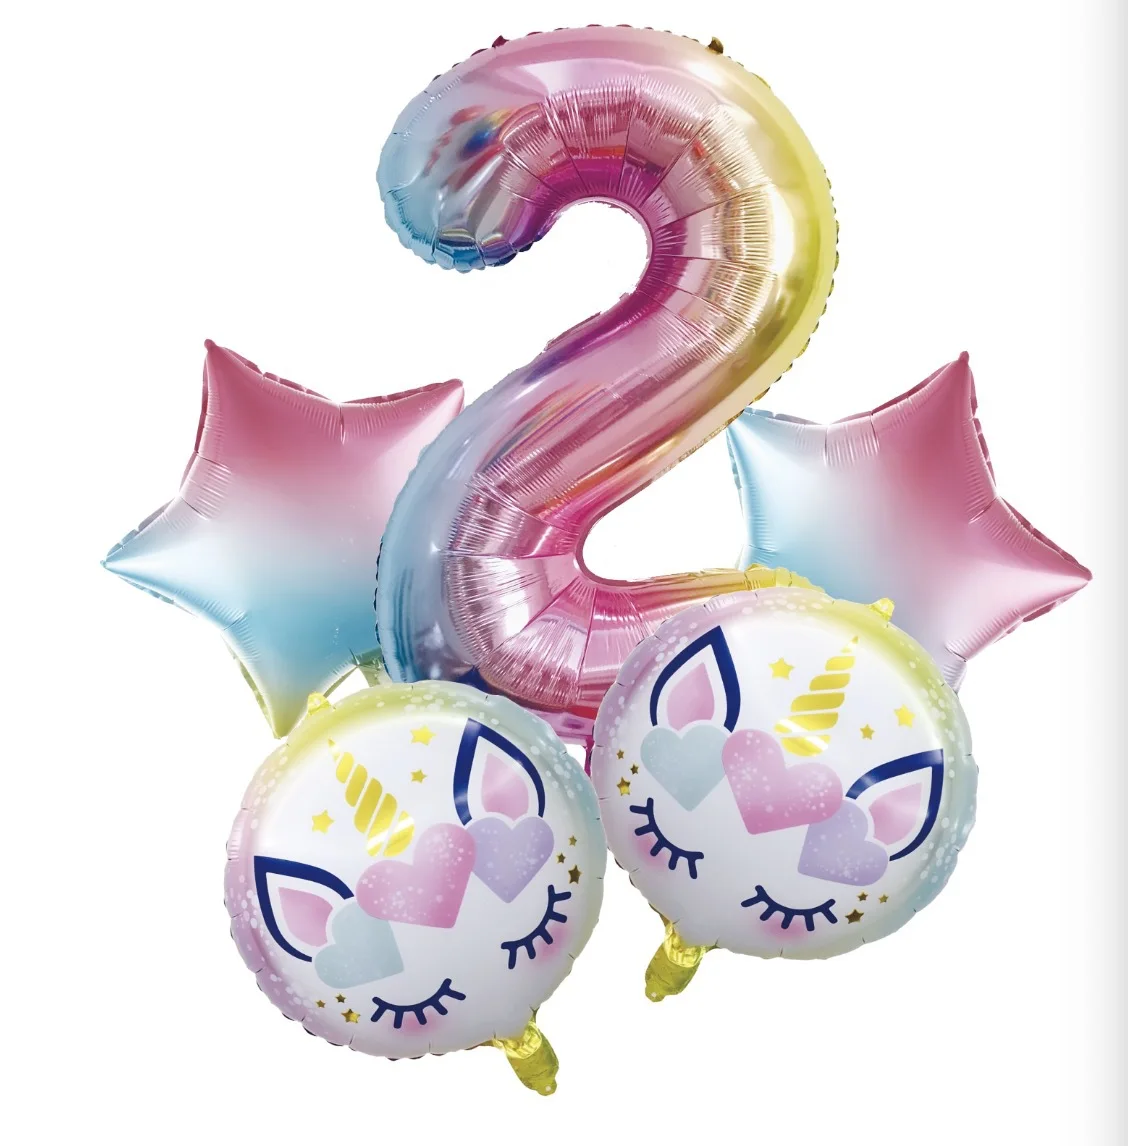 5 шт. в наборе, фольгированные гелиевые шары в форме единорога, украшения для дня рождения, Детские вечерние шары в виде единорога